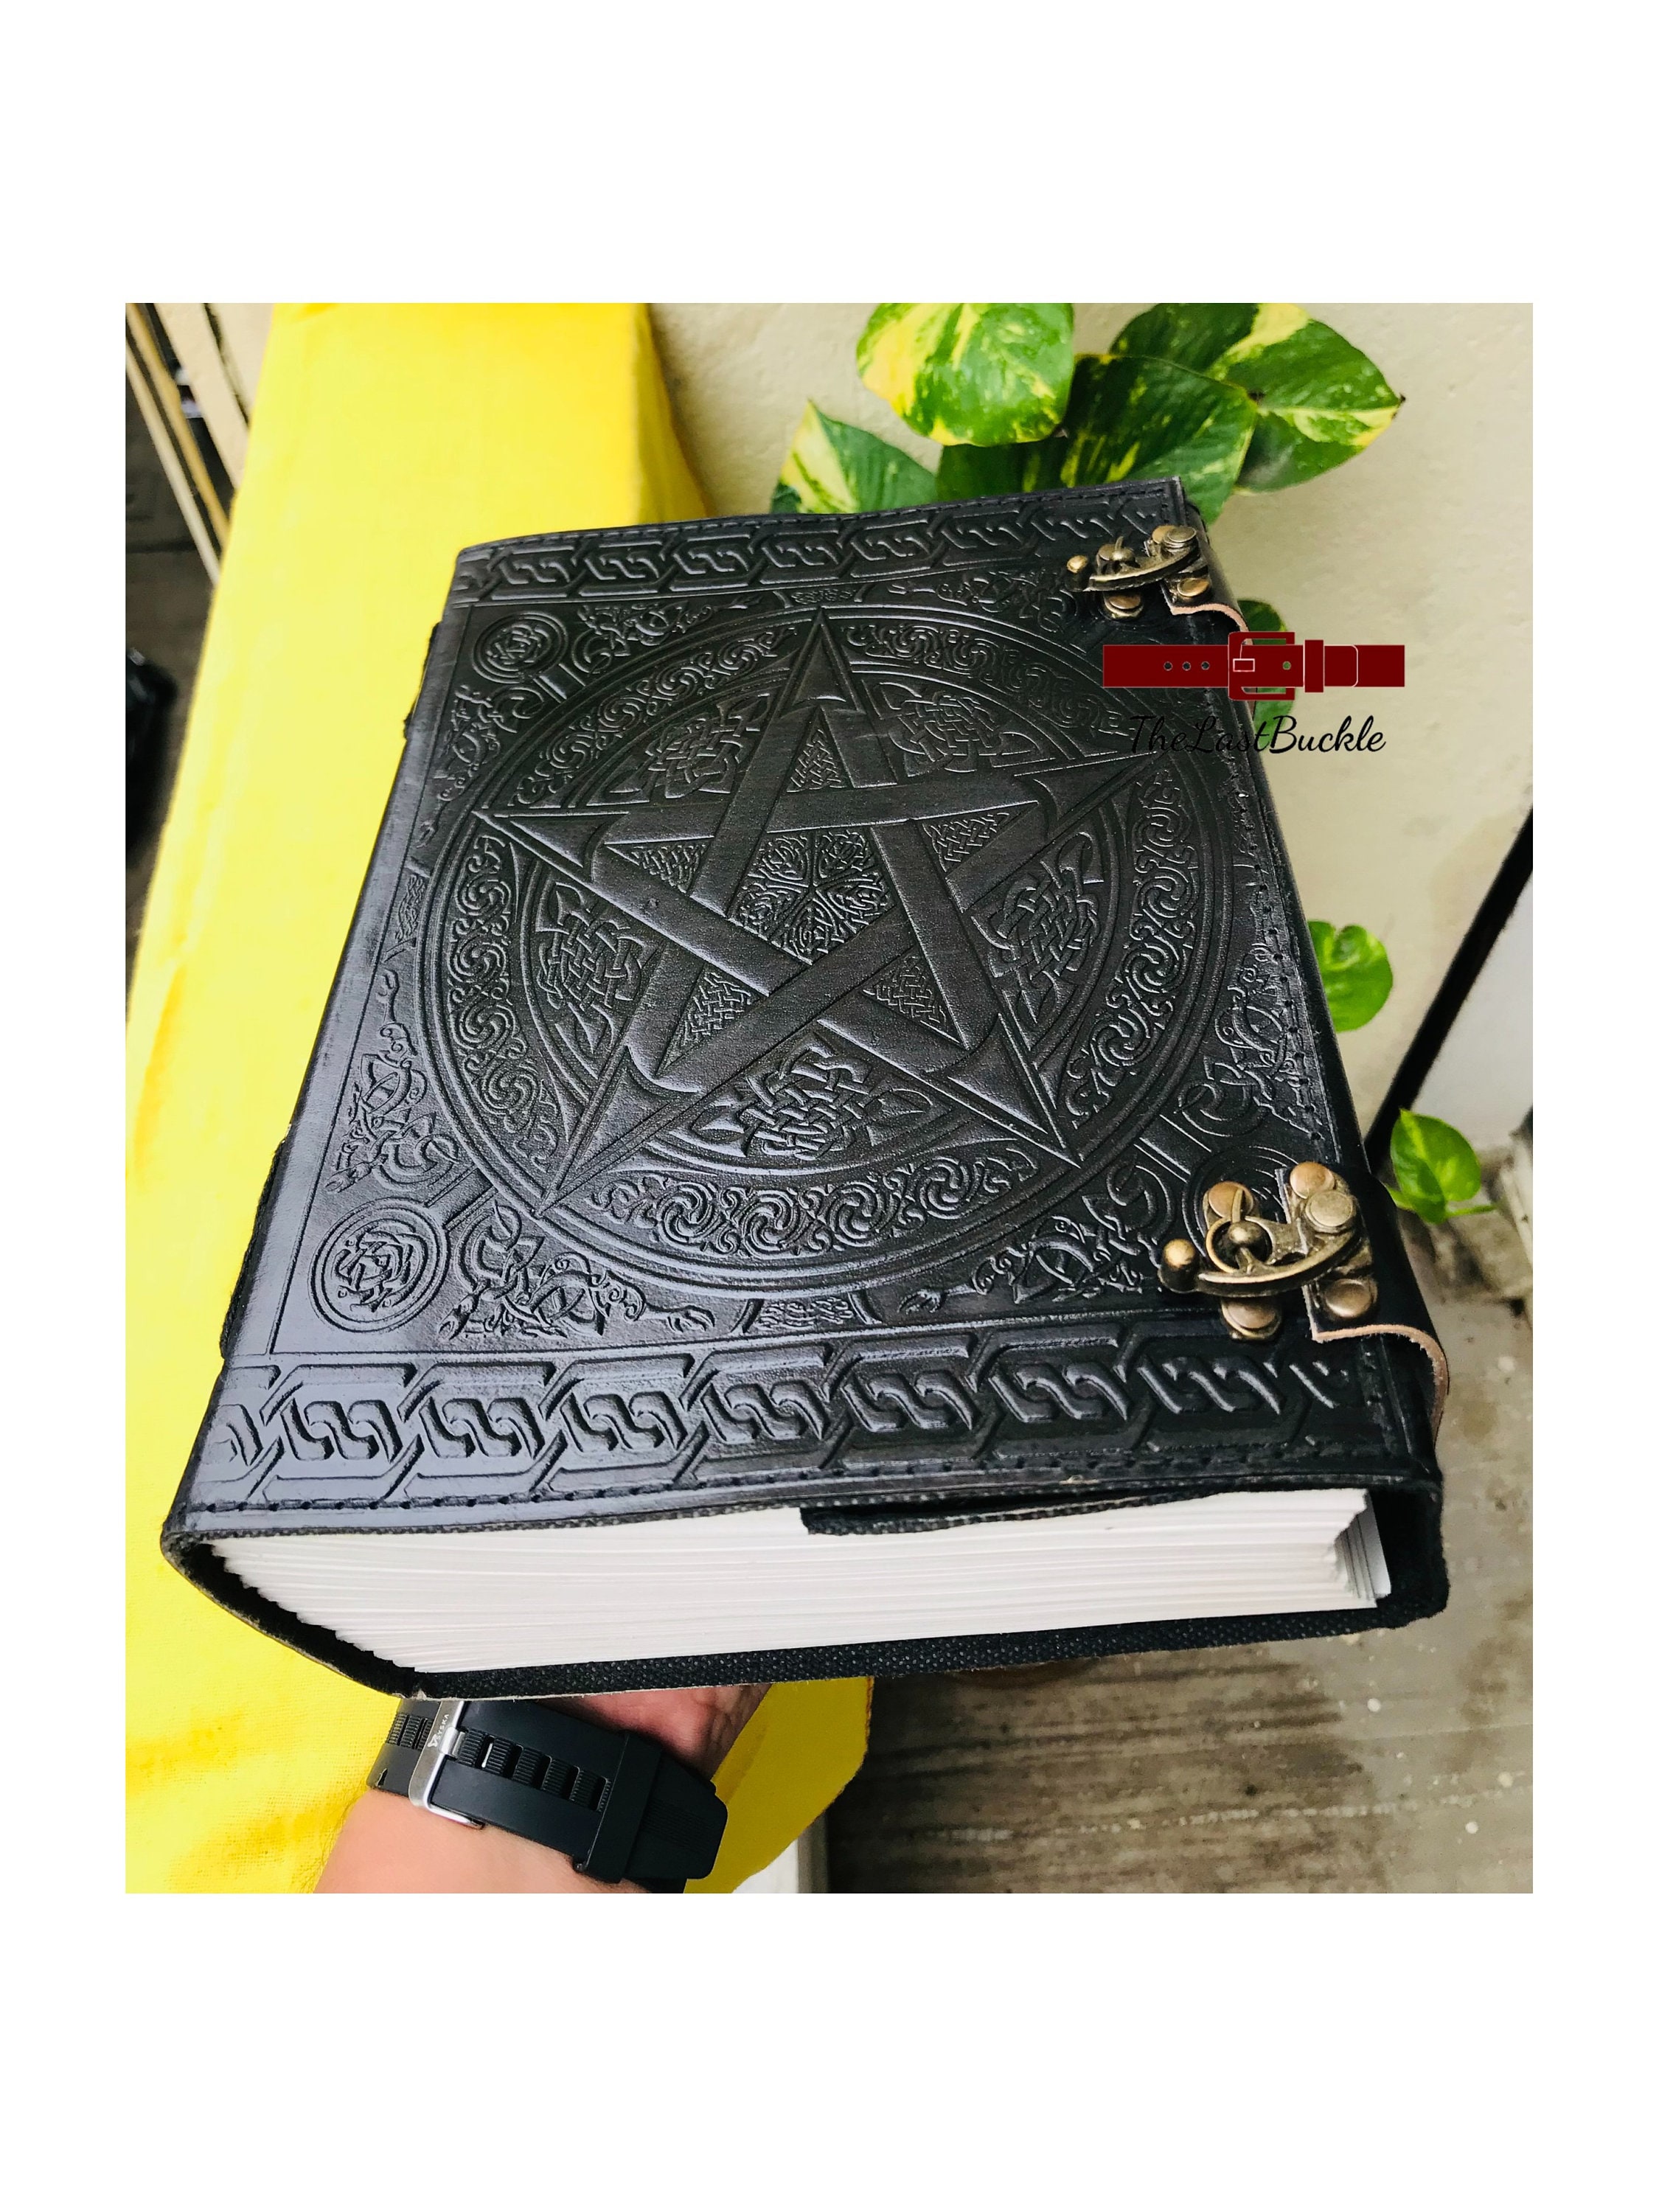 Thick Handmade Notebook Journal Sketchbook Travel Journal 